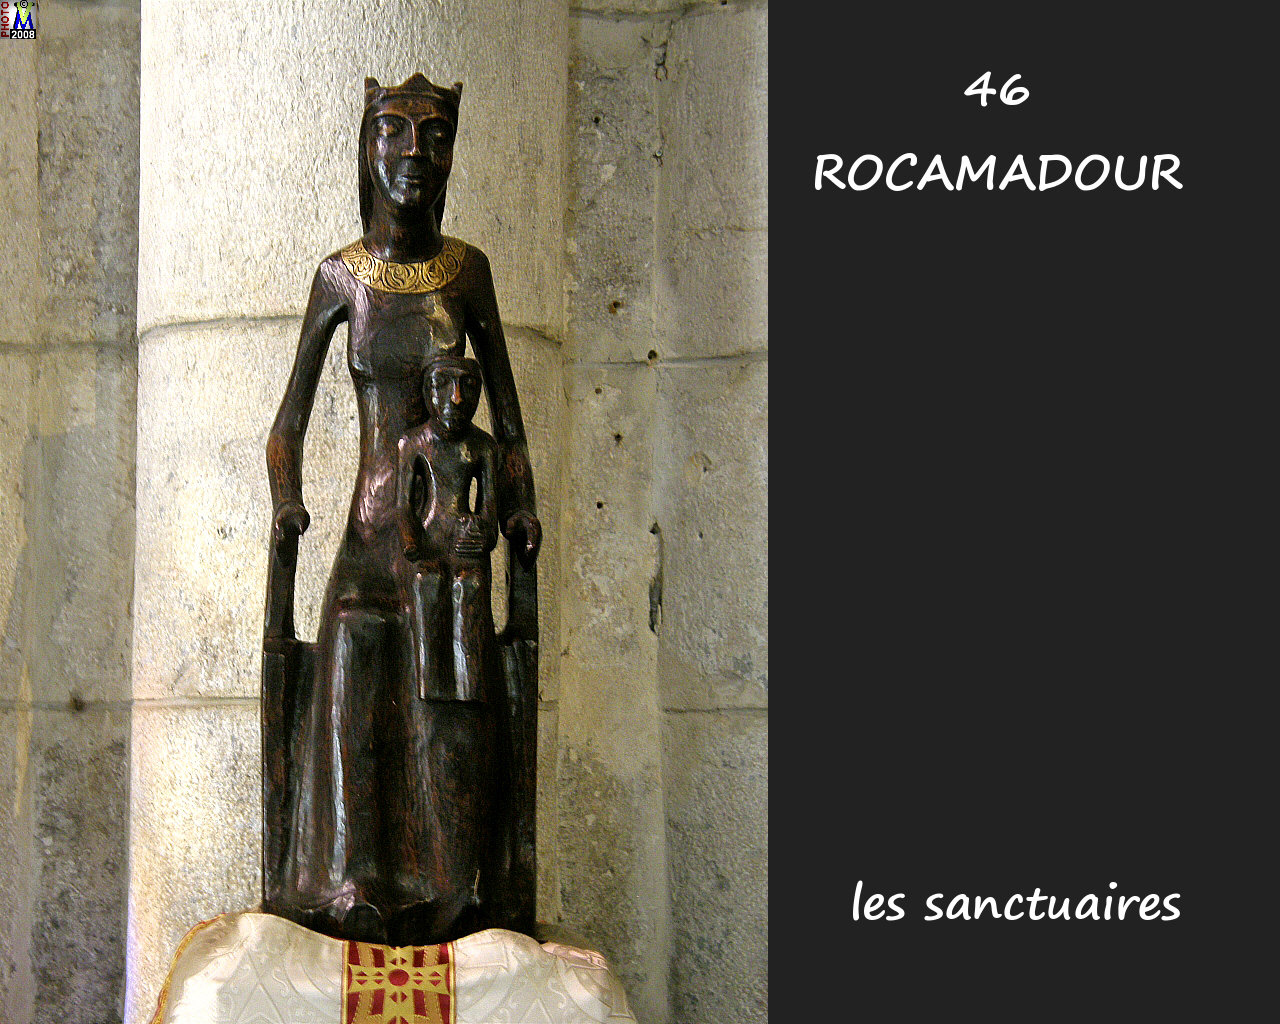 46ROCAMADOUR_sanctuaires_750.jpg